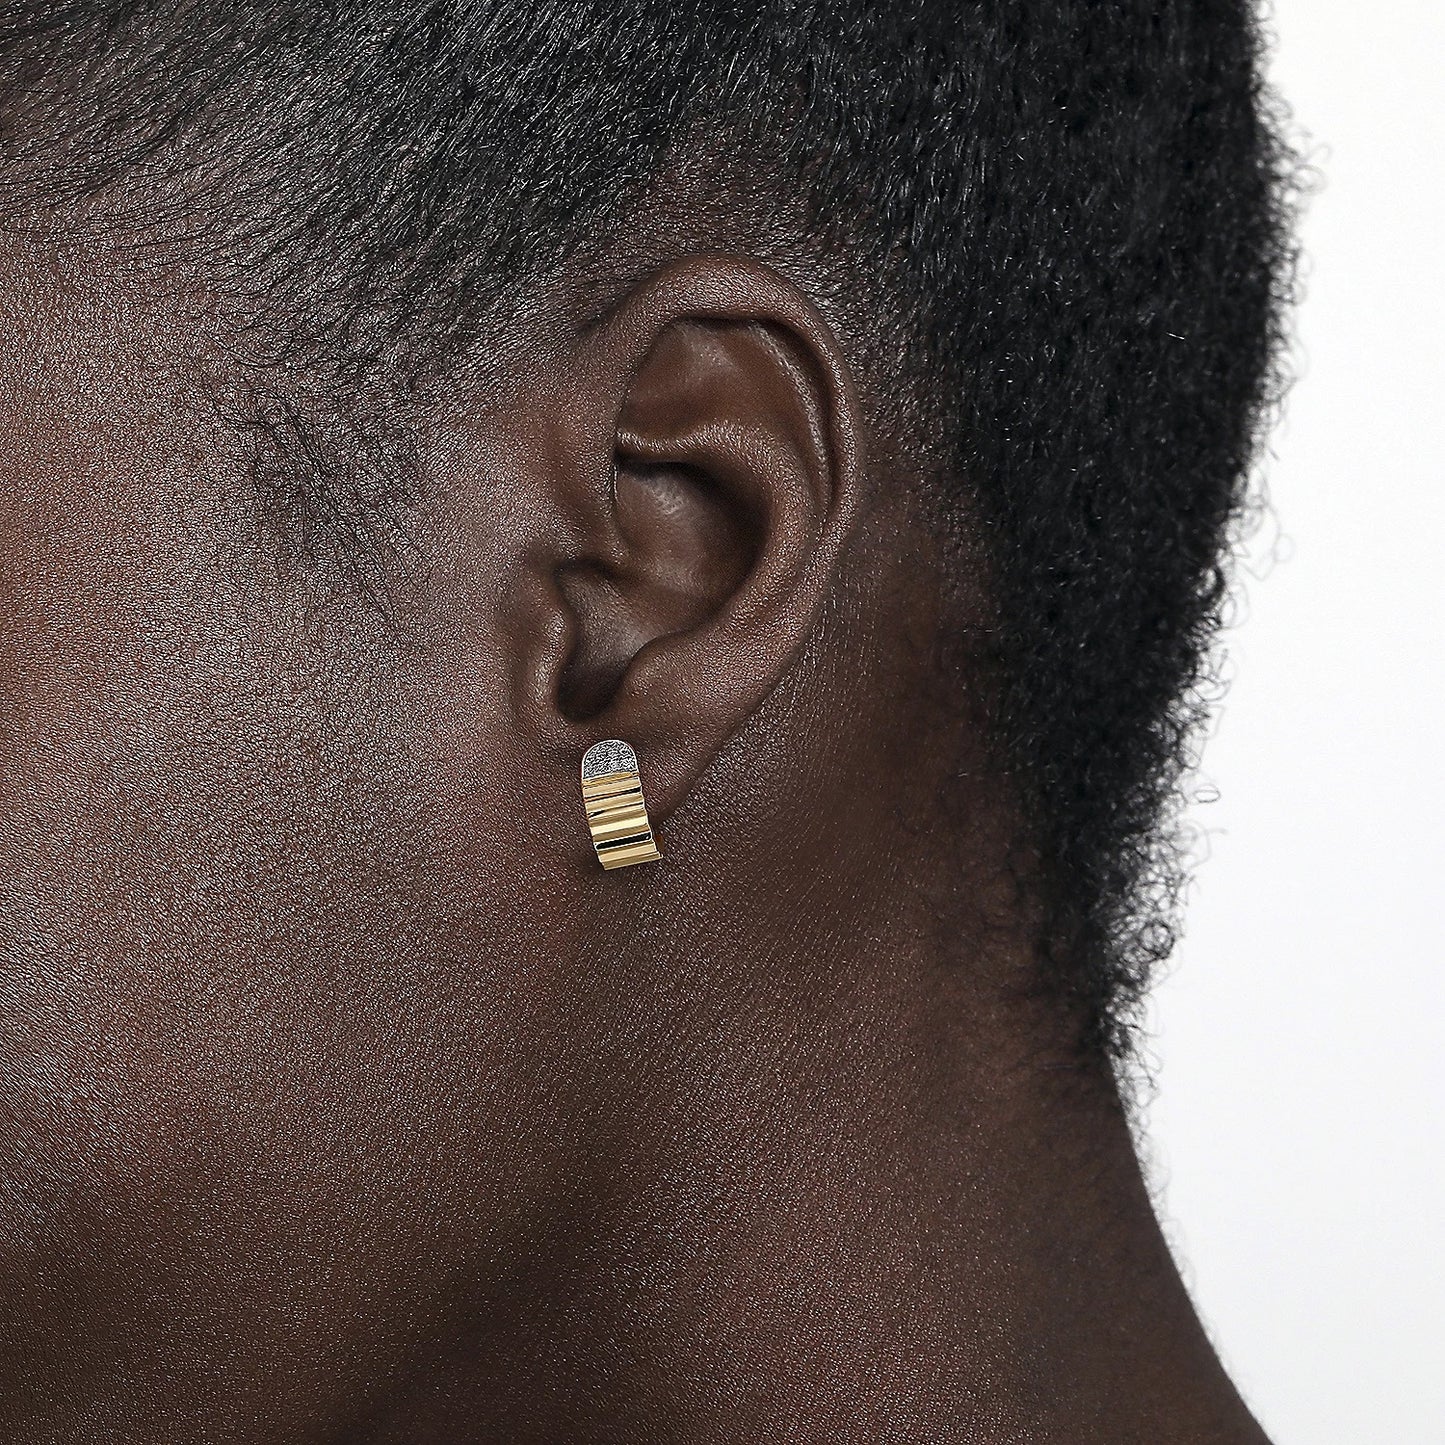 Diamond J Stud Earrings with Diamond Cut Texture